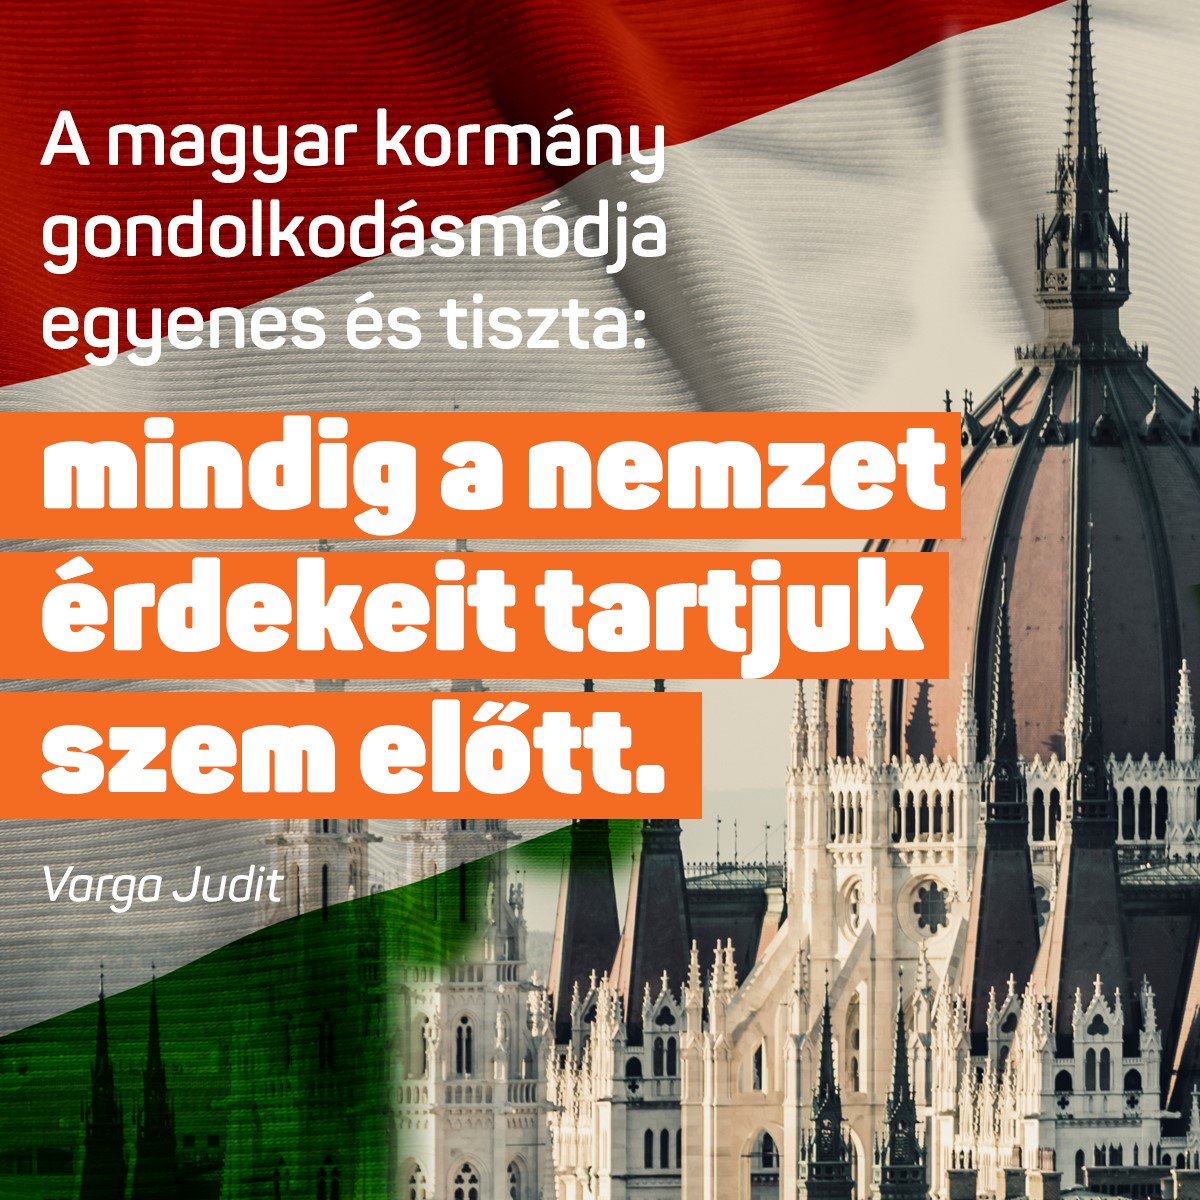 Varga Judit – A magyar kormány gondolkodásmódja egyenes és tiszta: mindig a nemzet érdekeit tartjuk szem előtt.